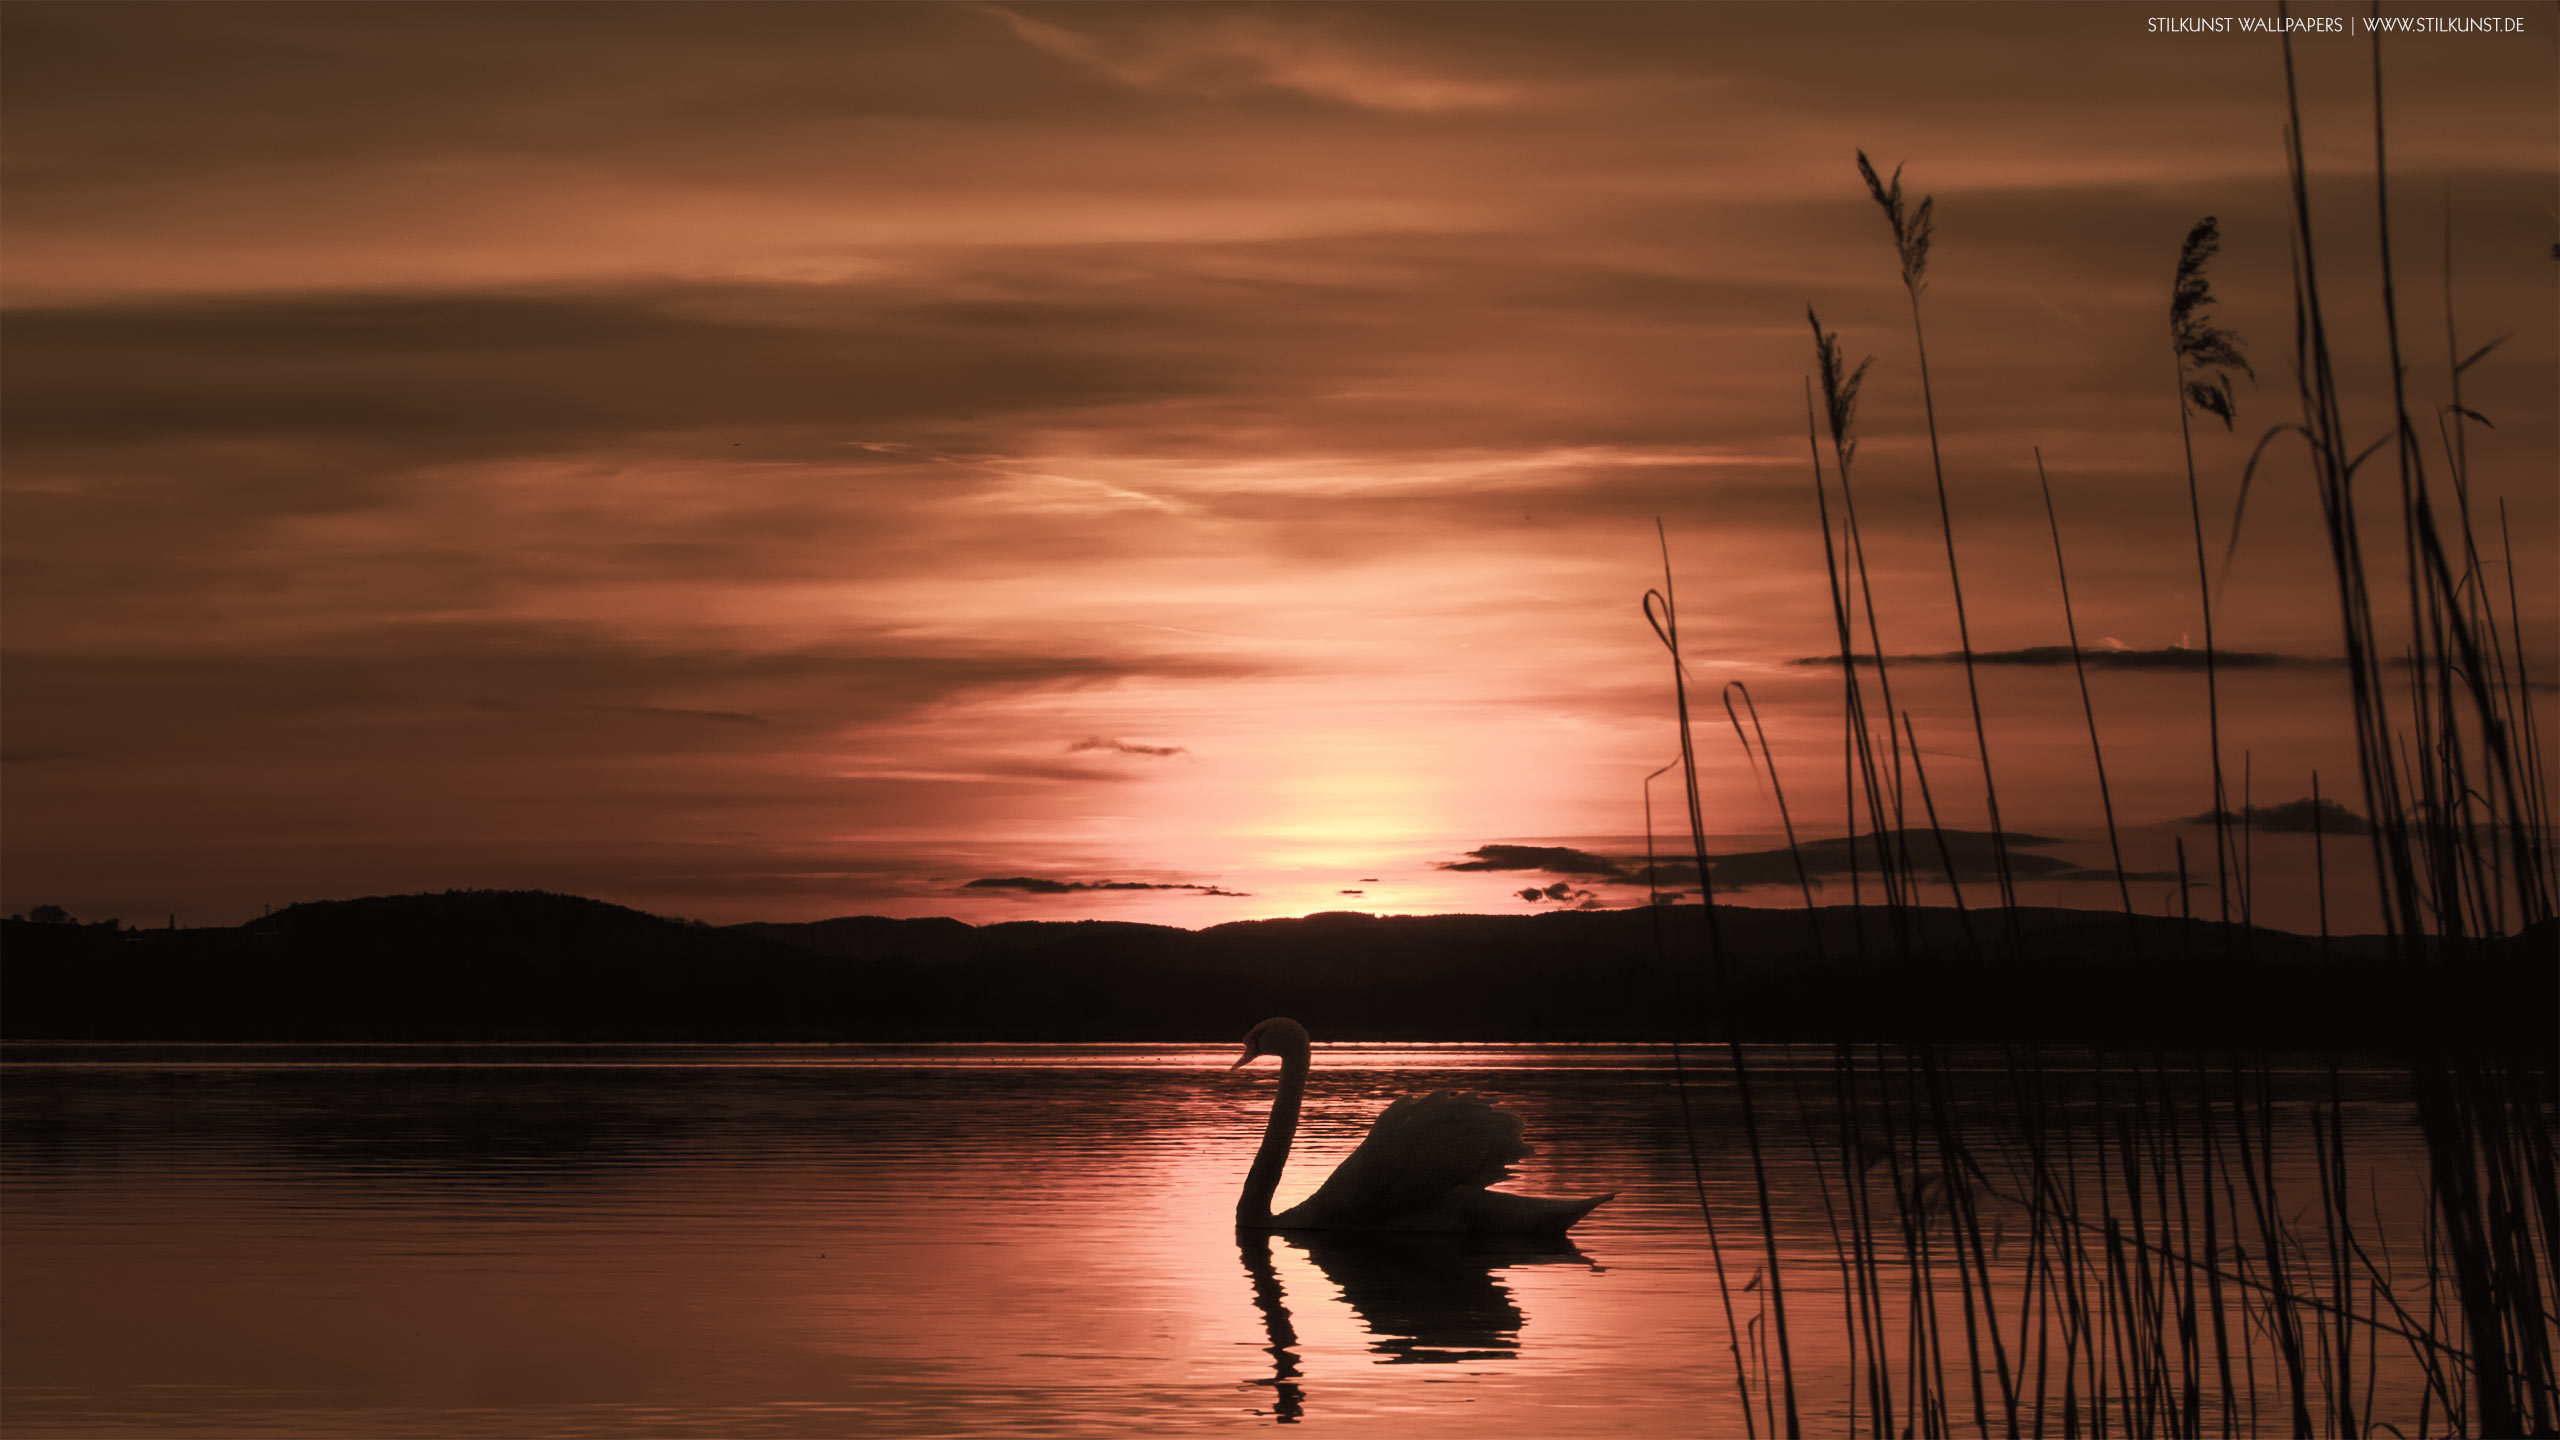 Sonnenuntergang | 2560 x 1440px | Bild: ©by Sabrina | Reiner | www.stilkunst.de | Lizenz: CC BY-SA